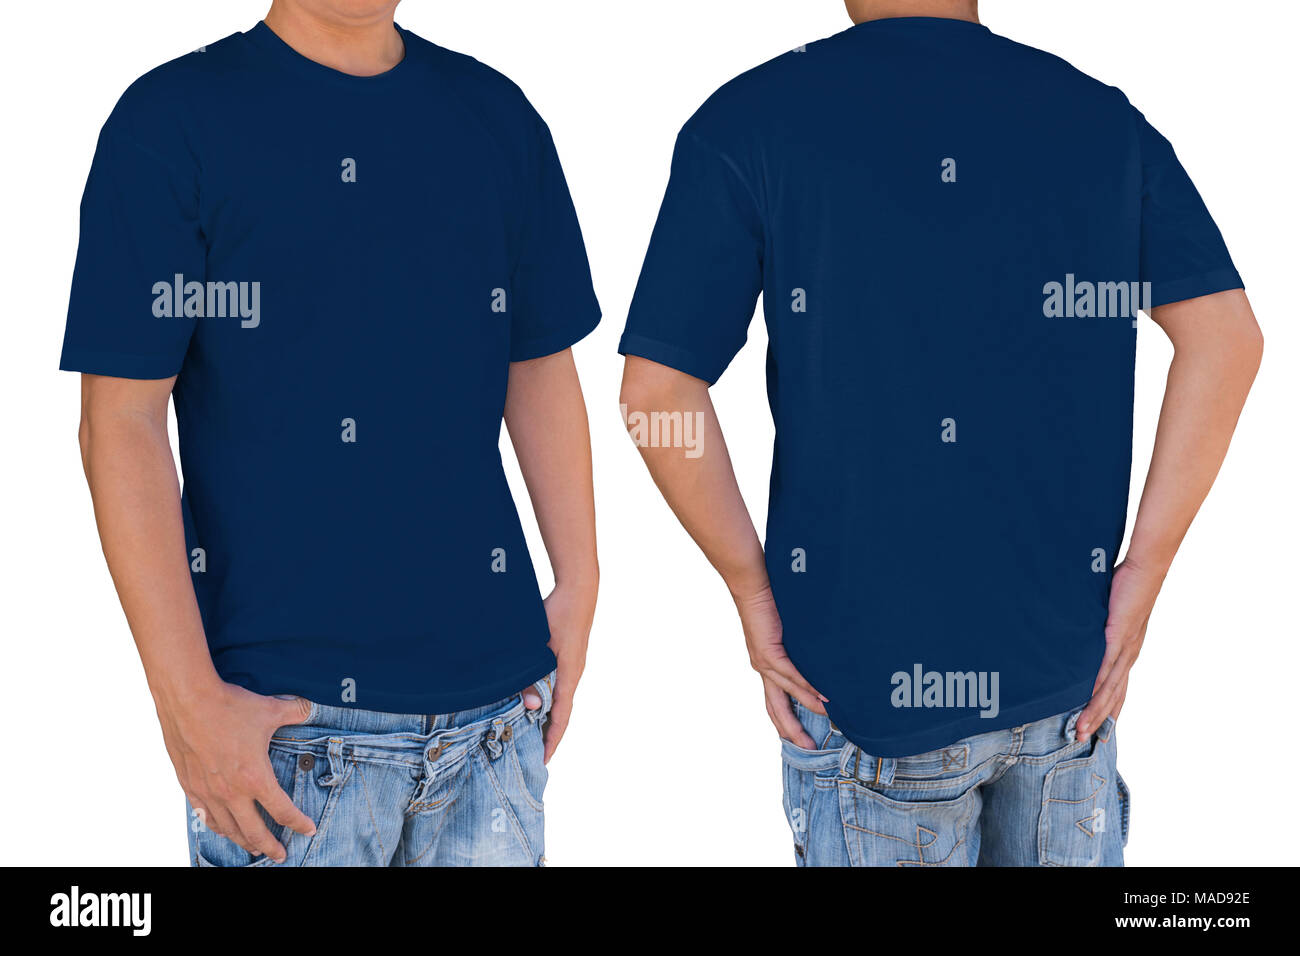 Hombre vestido con color azul oscuro t-shirt con trazado de recorte, vista frontal y posterior. Plantilla para insertar logo, patrón o ilustraciones. Foto de stock